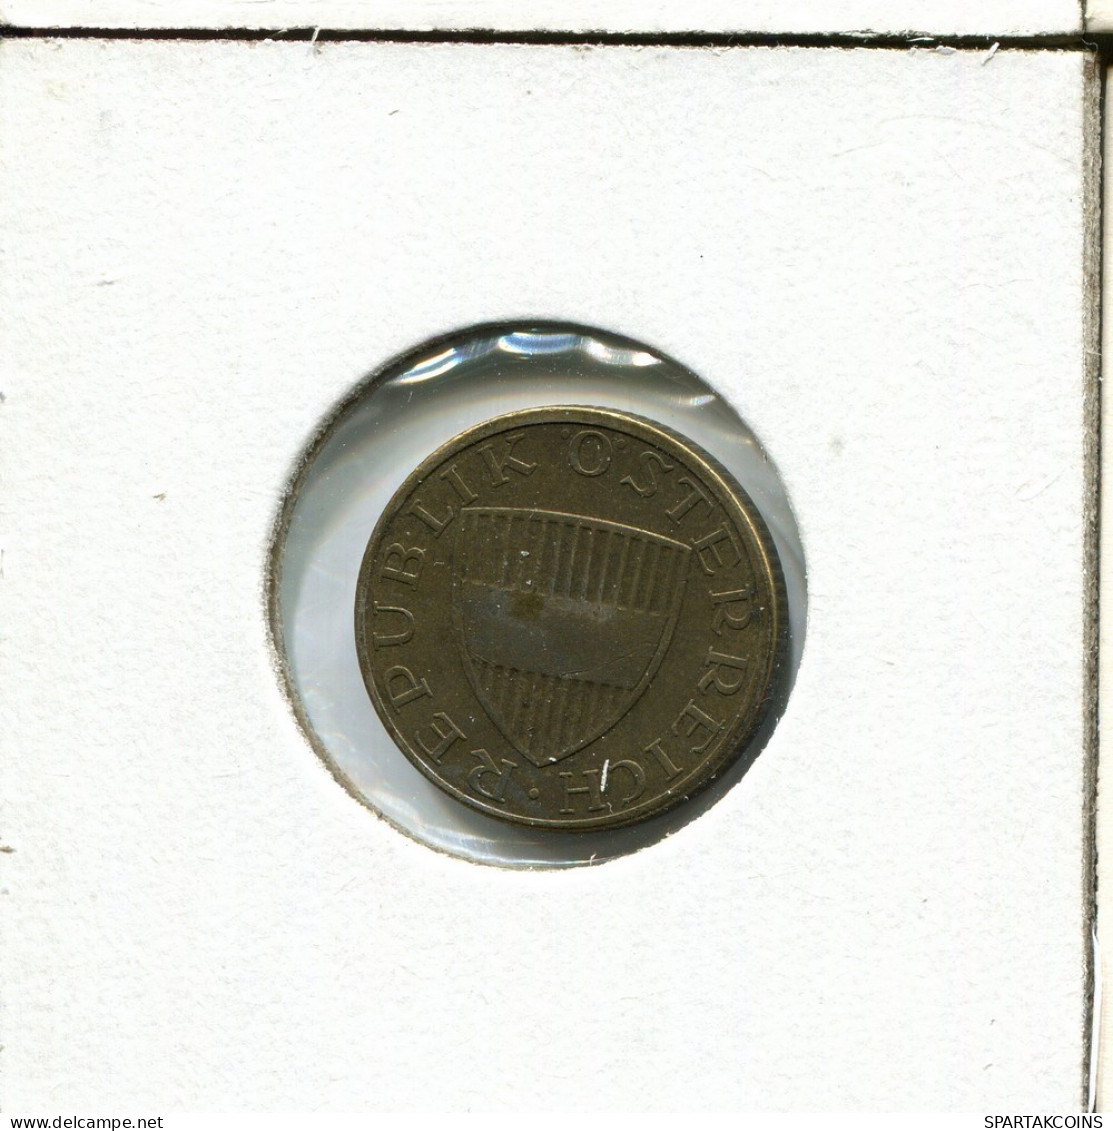 50 GROSCHEN 1965 AUSTRIA Moneda #AV053.E.A - Oostenrijk